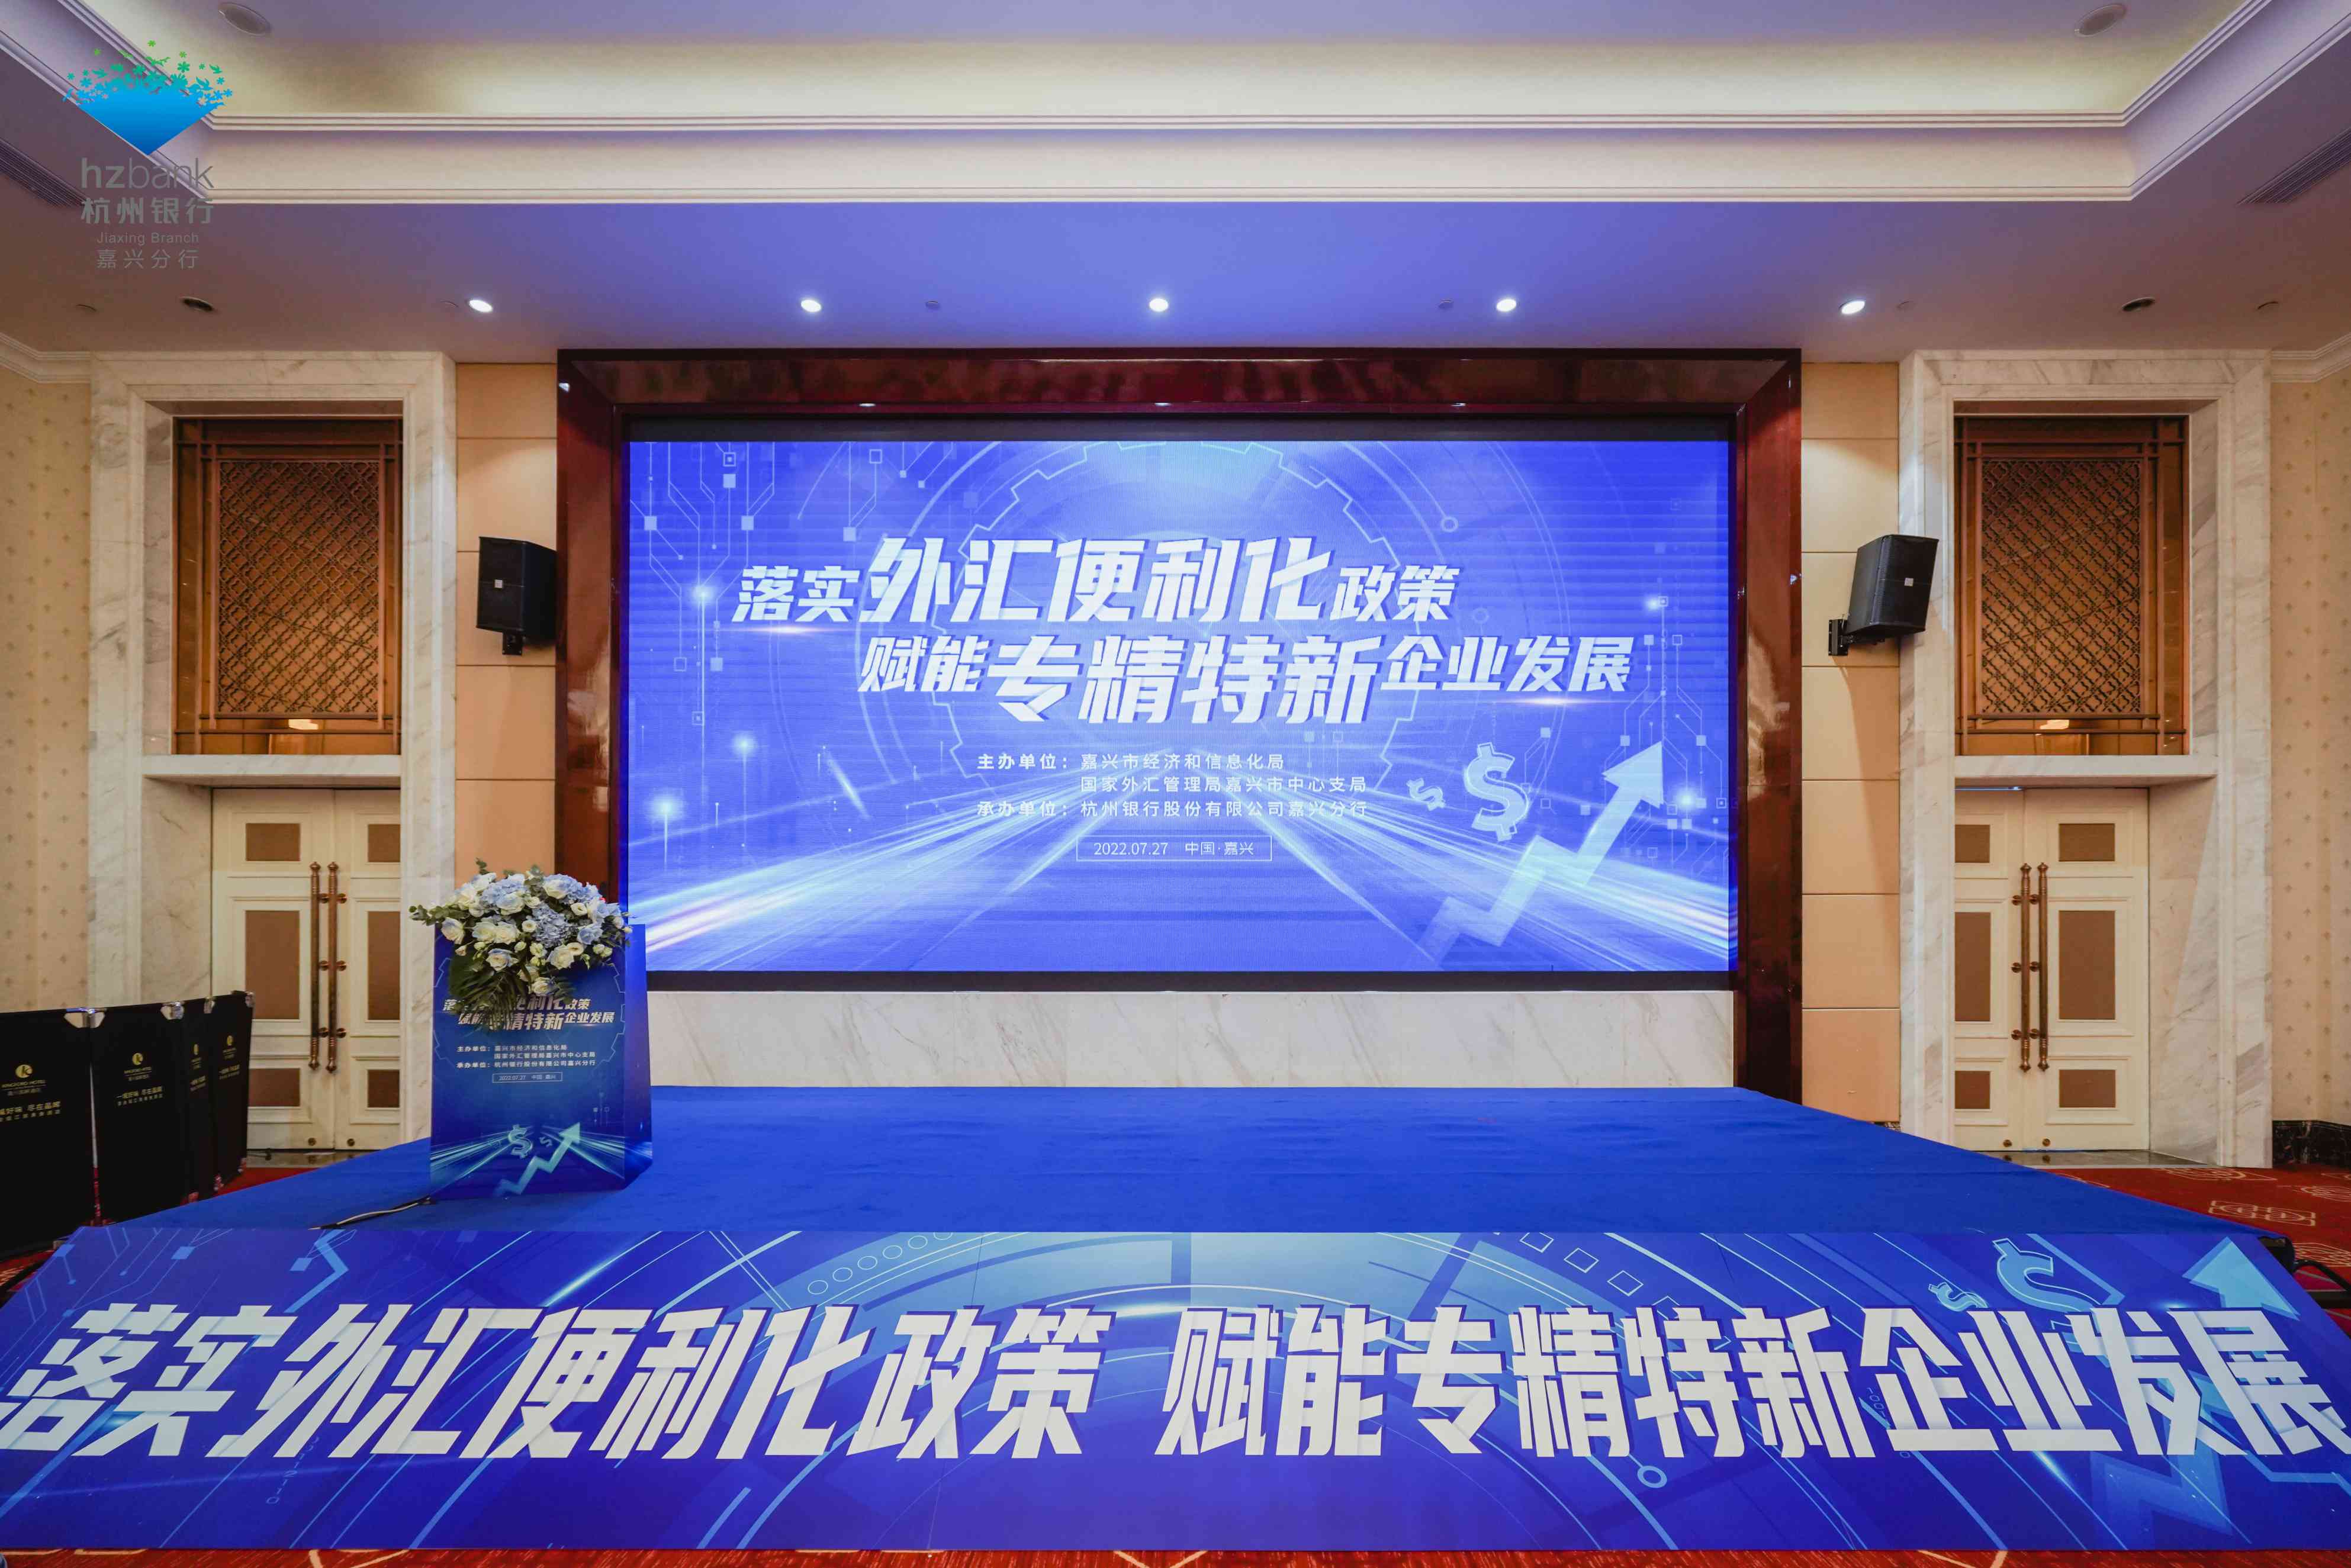 杭州银行“落实外汇便利化政策 赋能专精特新企业发展”主题活动